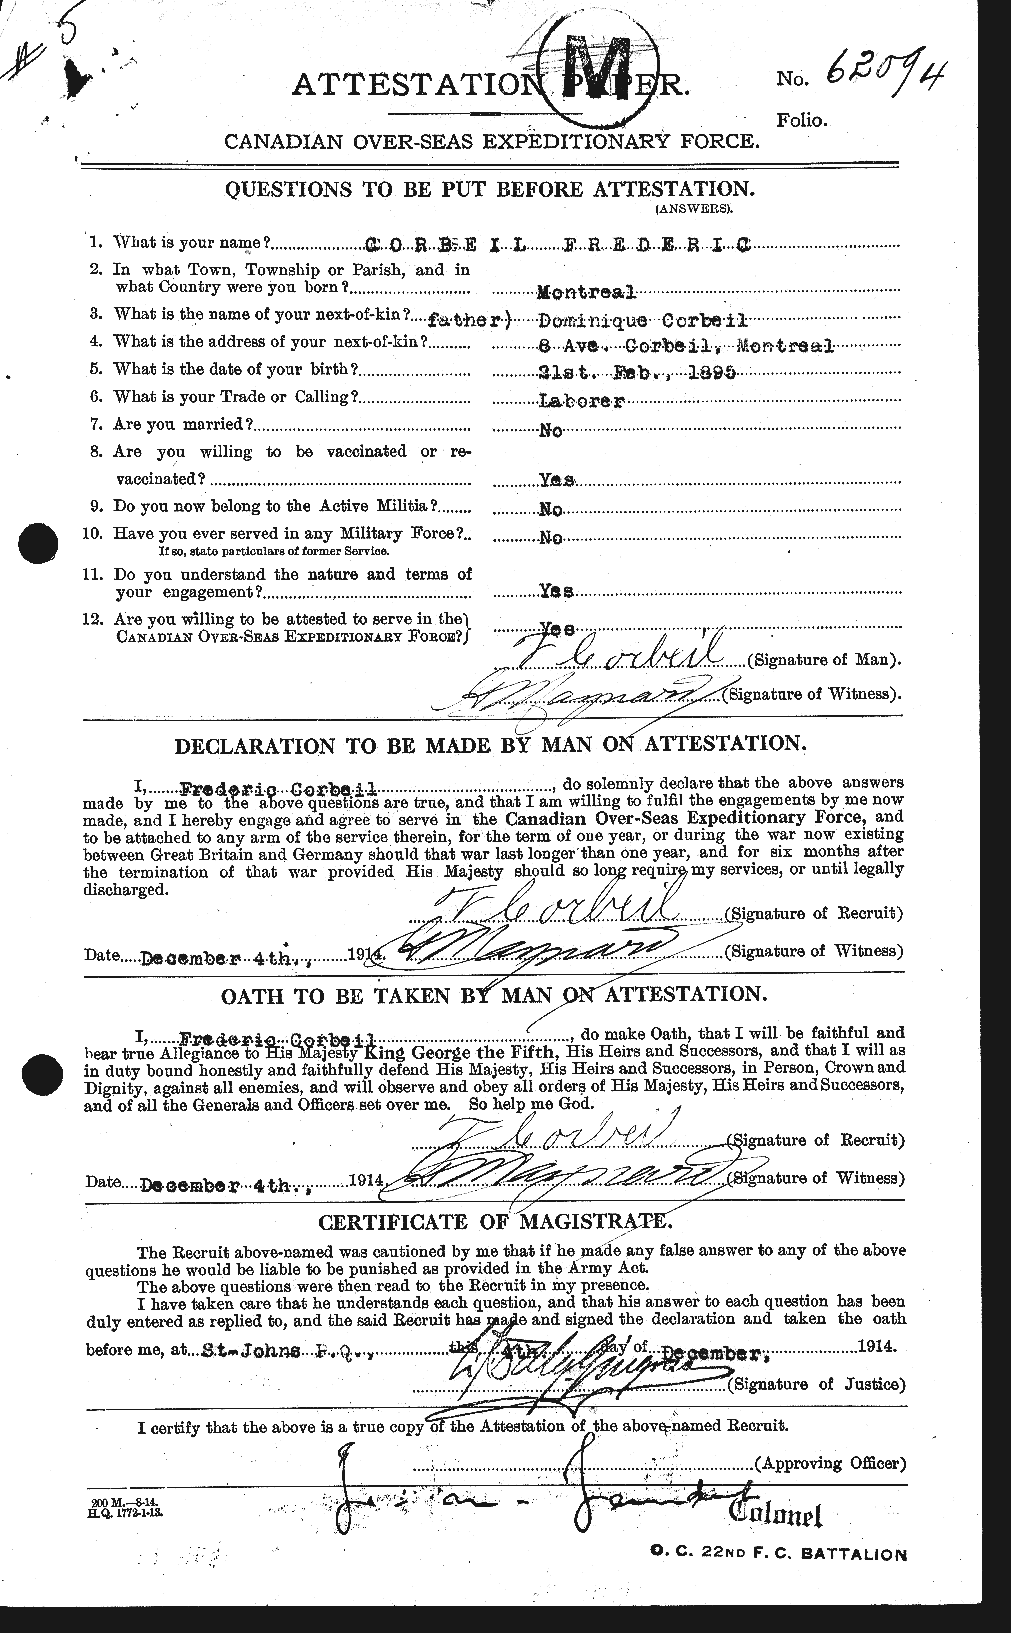 Dossiers du Personnel de la Première Guerre mondiale - CEC 055428a